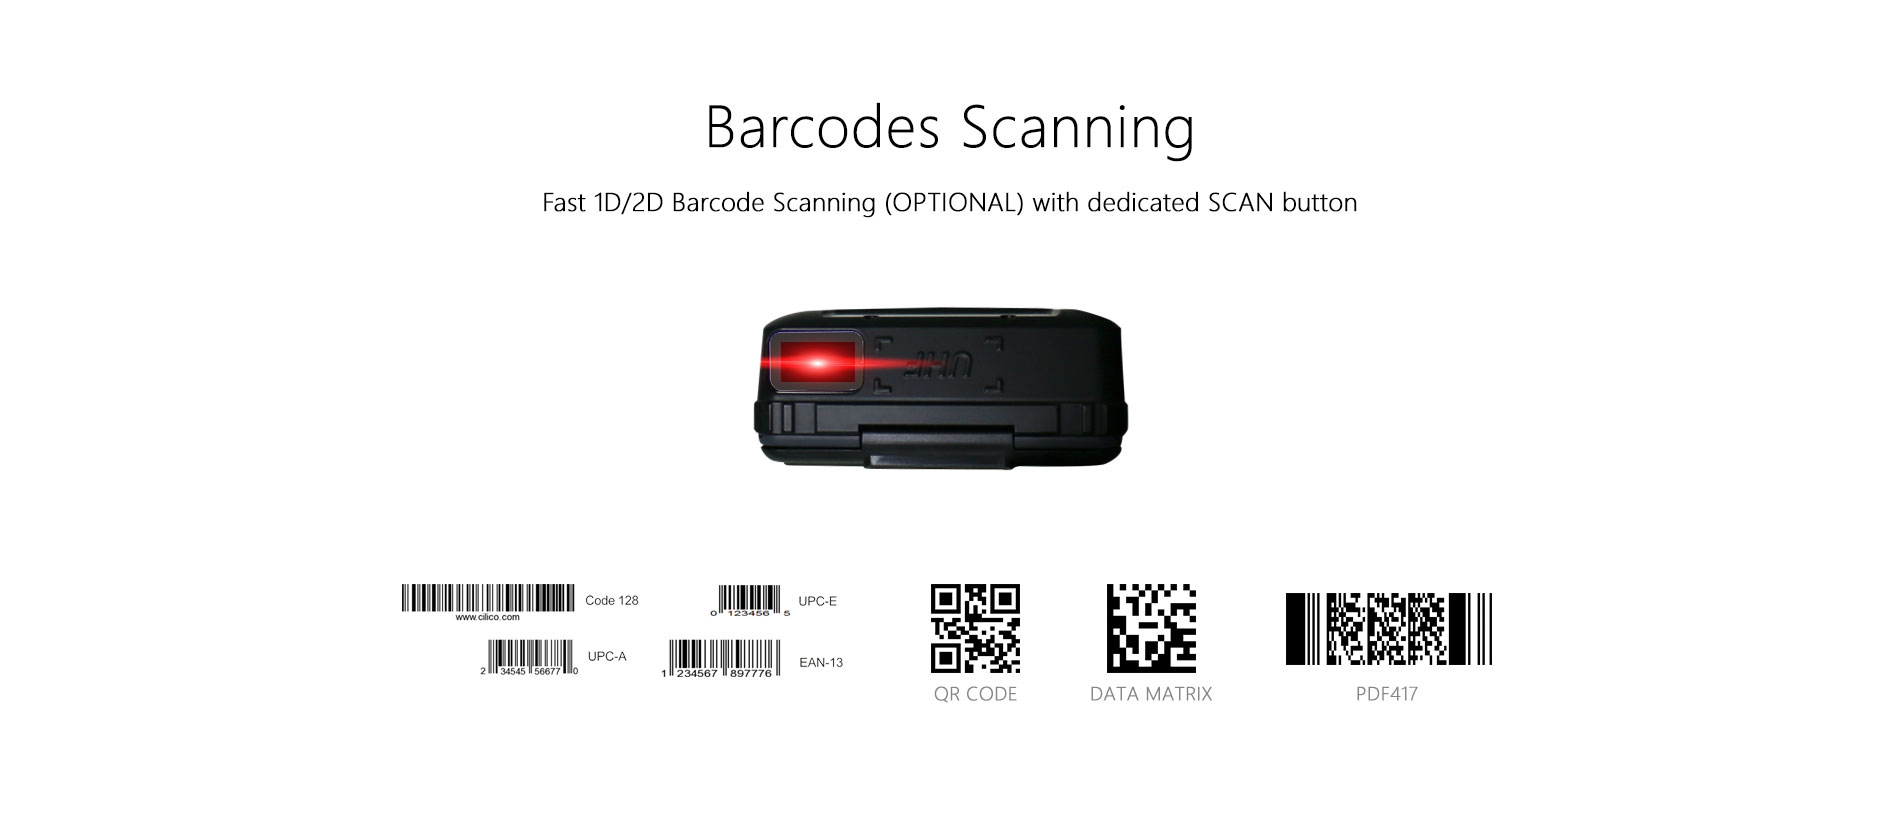 Barcodescanner slim apparaat met printer